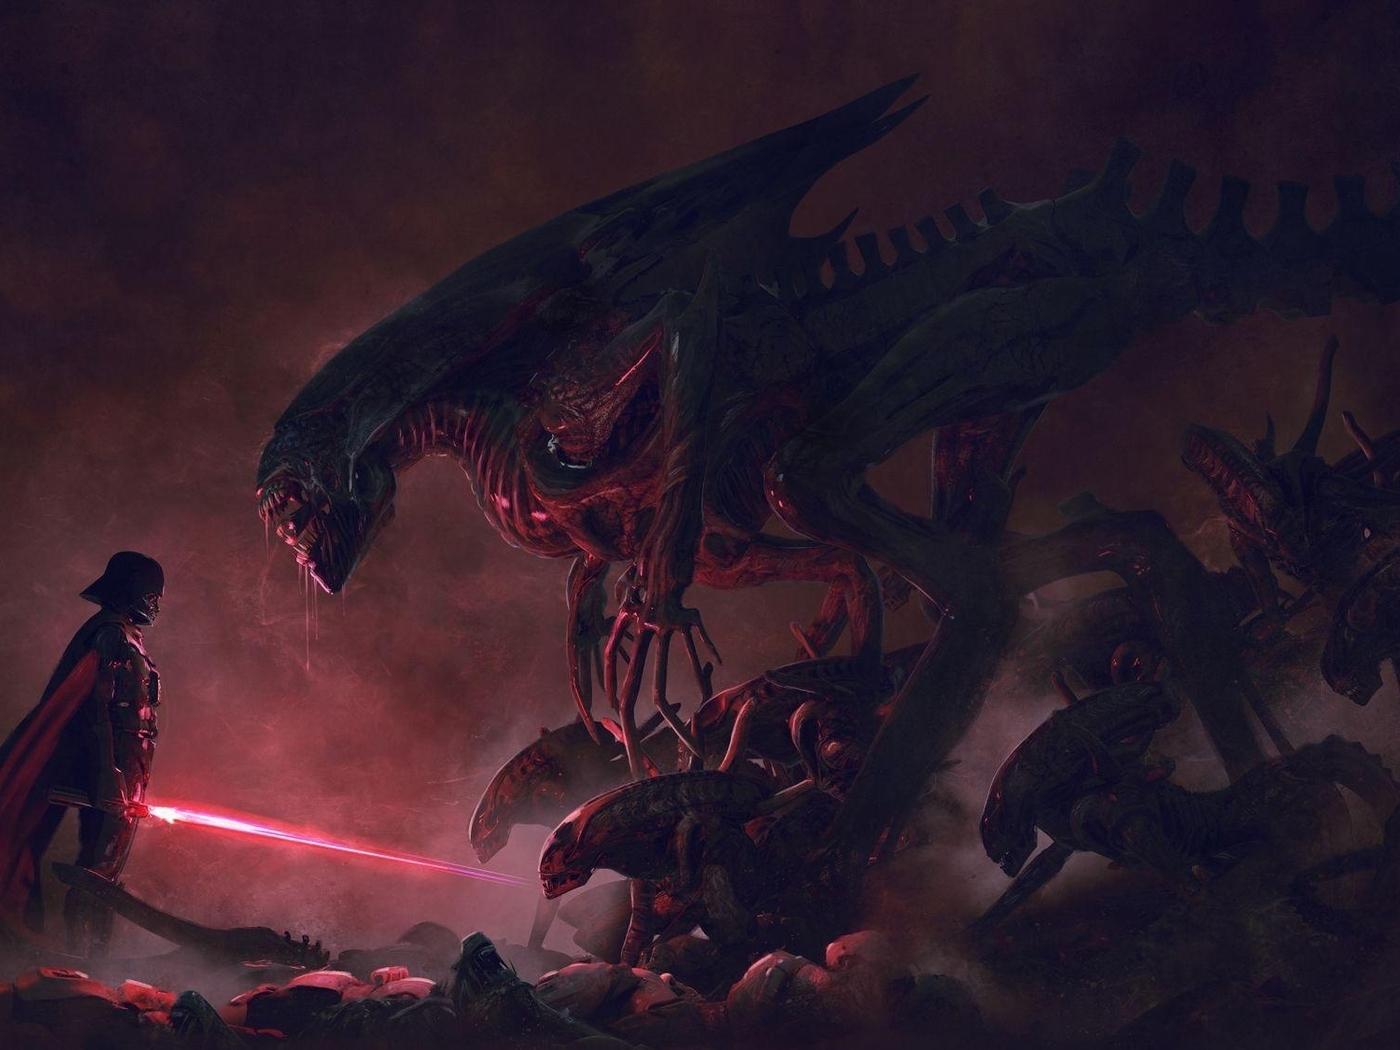 Картинка: Vader Vs Aliens, Дарт Вейдер, Чужие, противостояние, битва, меч, арт, свет, туман